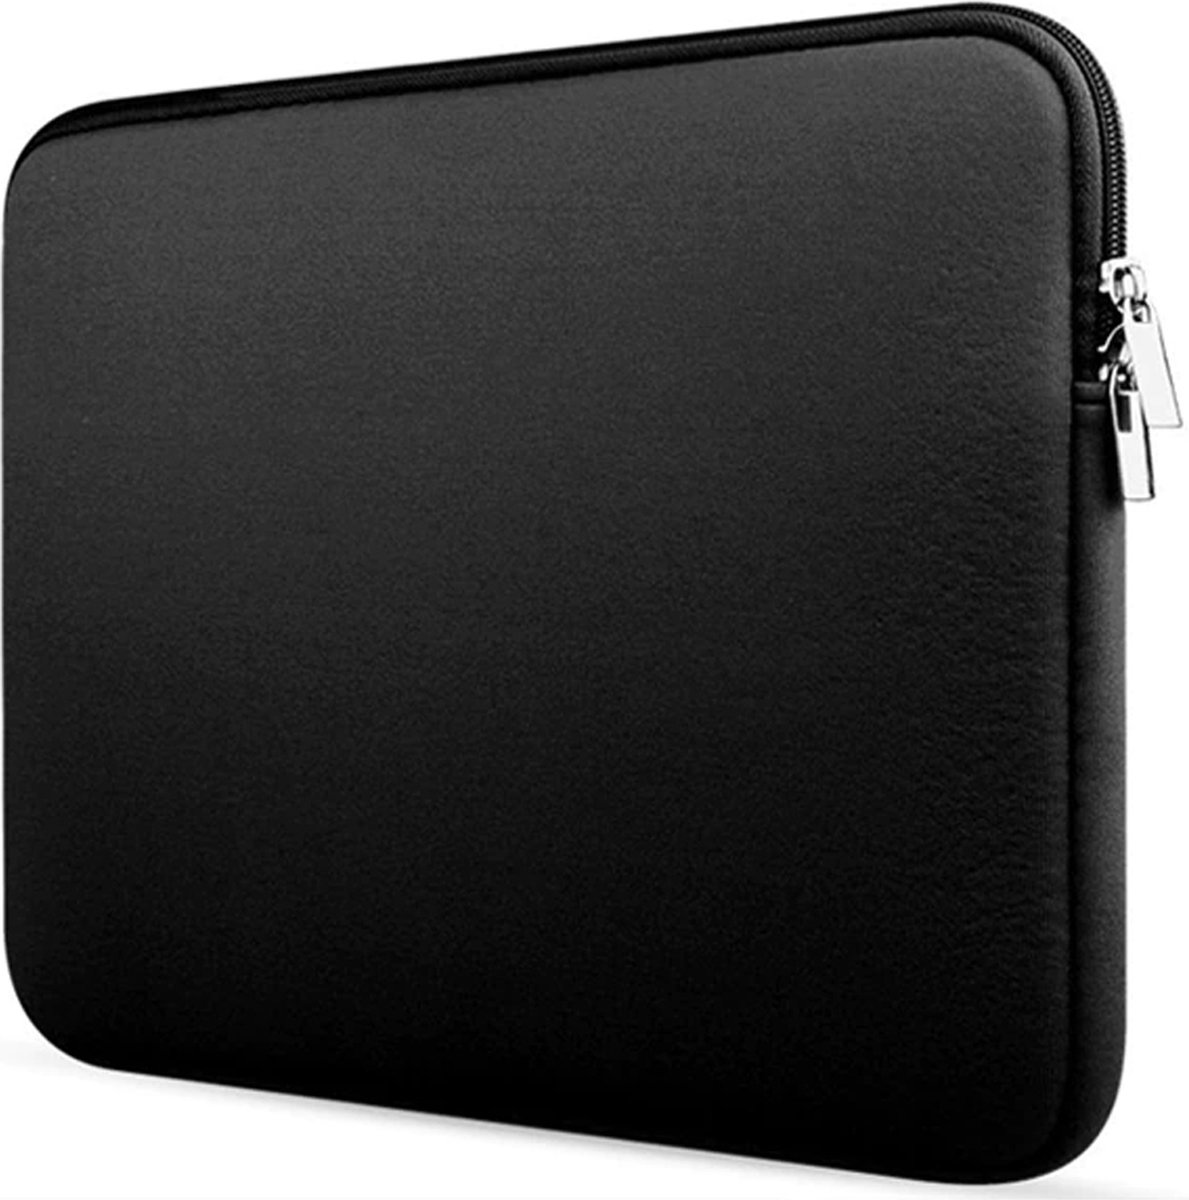 Laptop Sleeve - Hoes geschikt voor je Laptop & MacBook - Notebook & Macbook Laptophoes - 13.3 inch Sleeve - Zwart